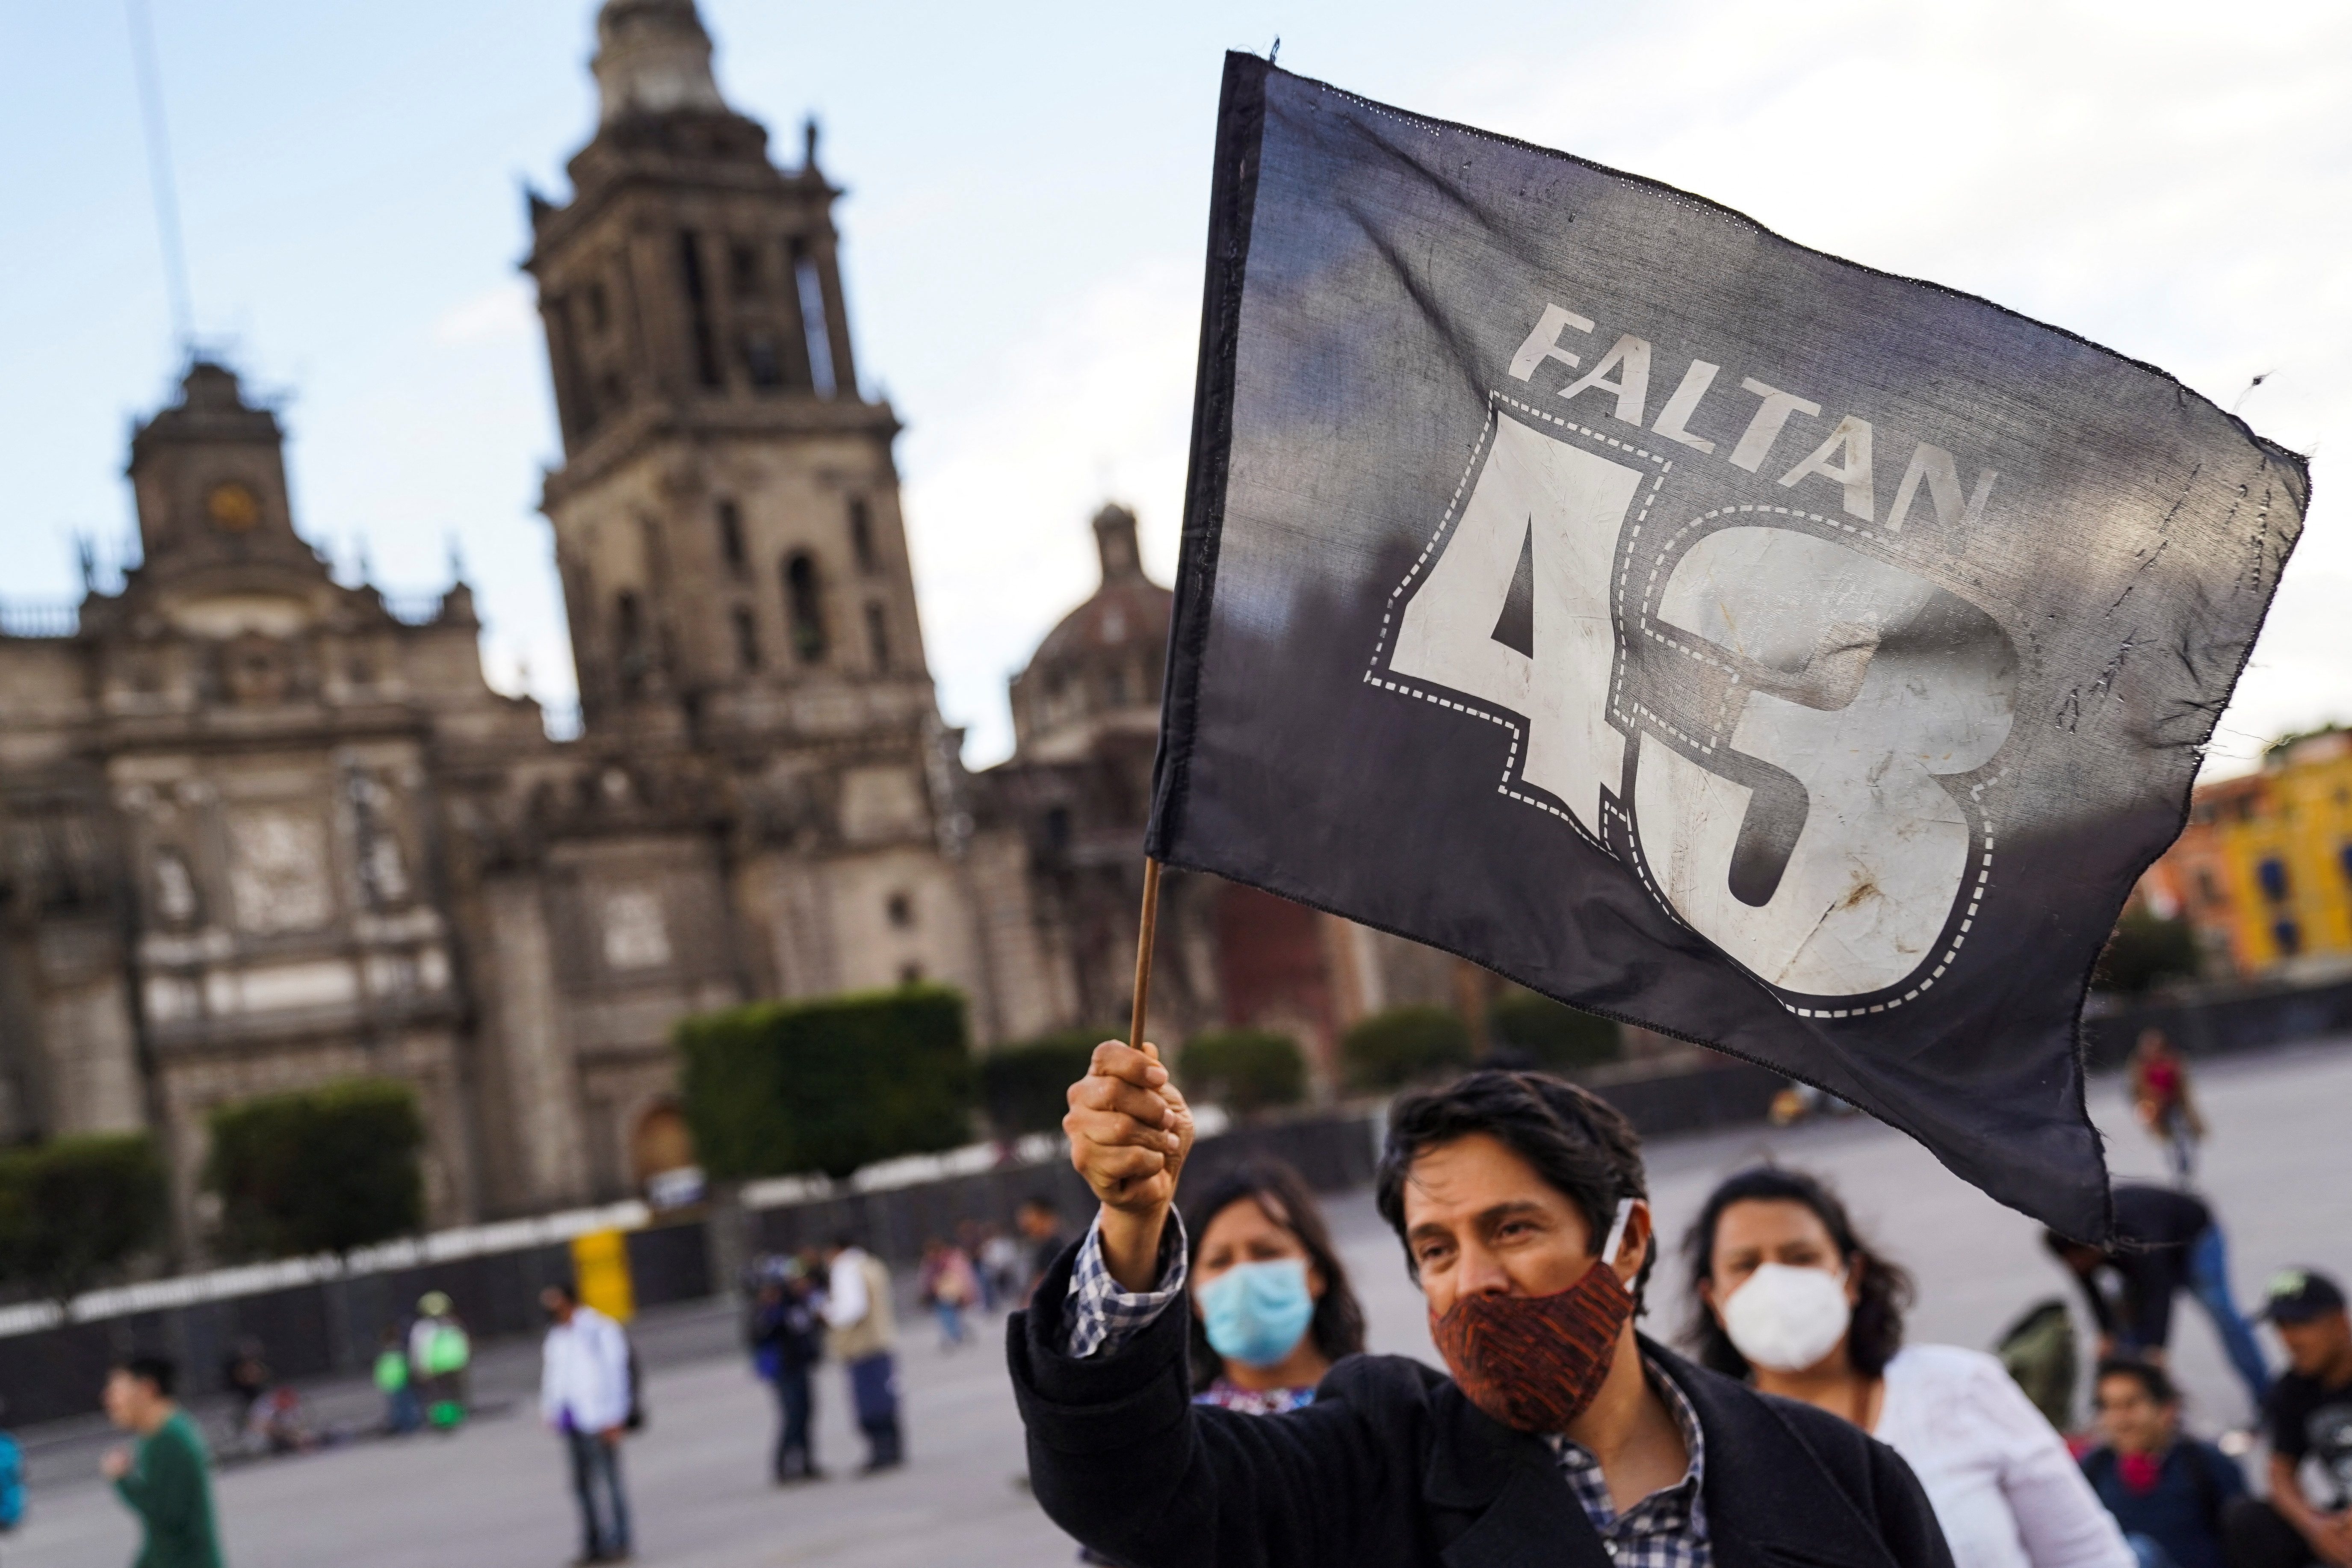 El caso Ayotzinapa ha generado dudas respecto a la veracidad de las investigaciones. (Foto: REUTERS/Toya Sarno Jordan)